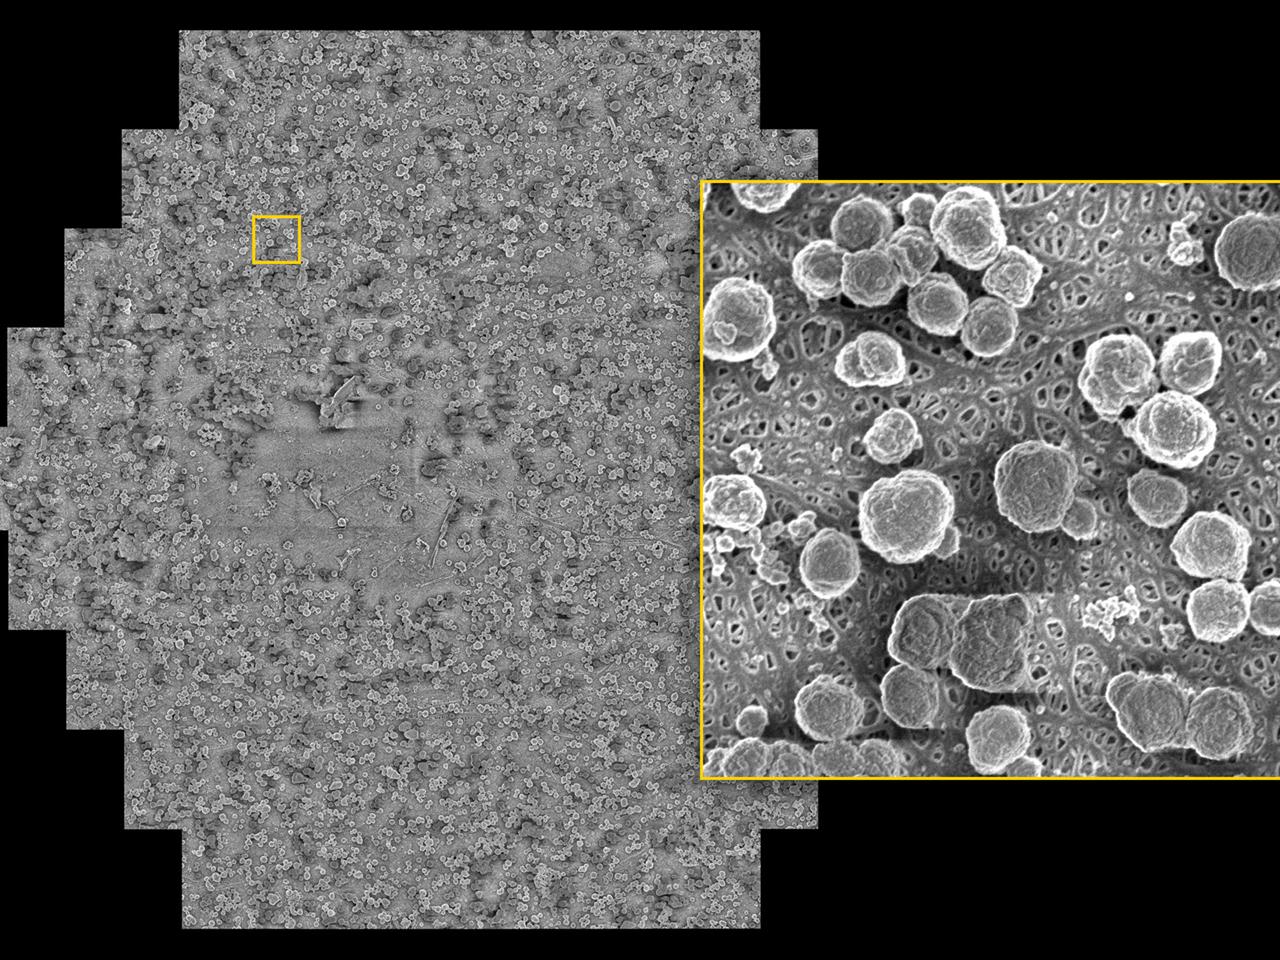 充放電後の電池のセパレーター箔。陽極側に析出物が認められる。入射電圧1 keV、ピクセルサイズ4 nm、視野108 μm x 94 μmで取得した画像。